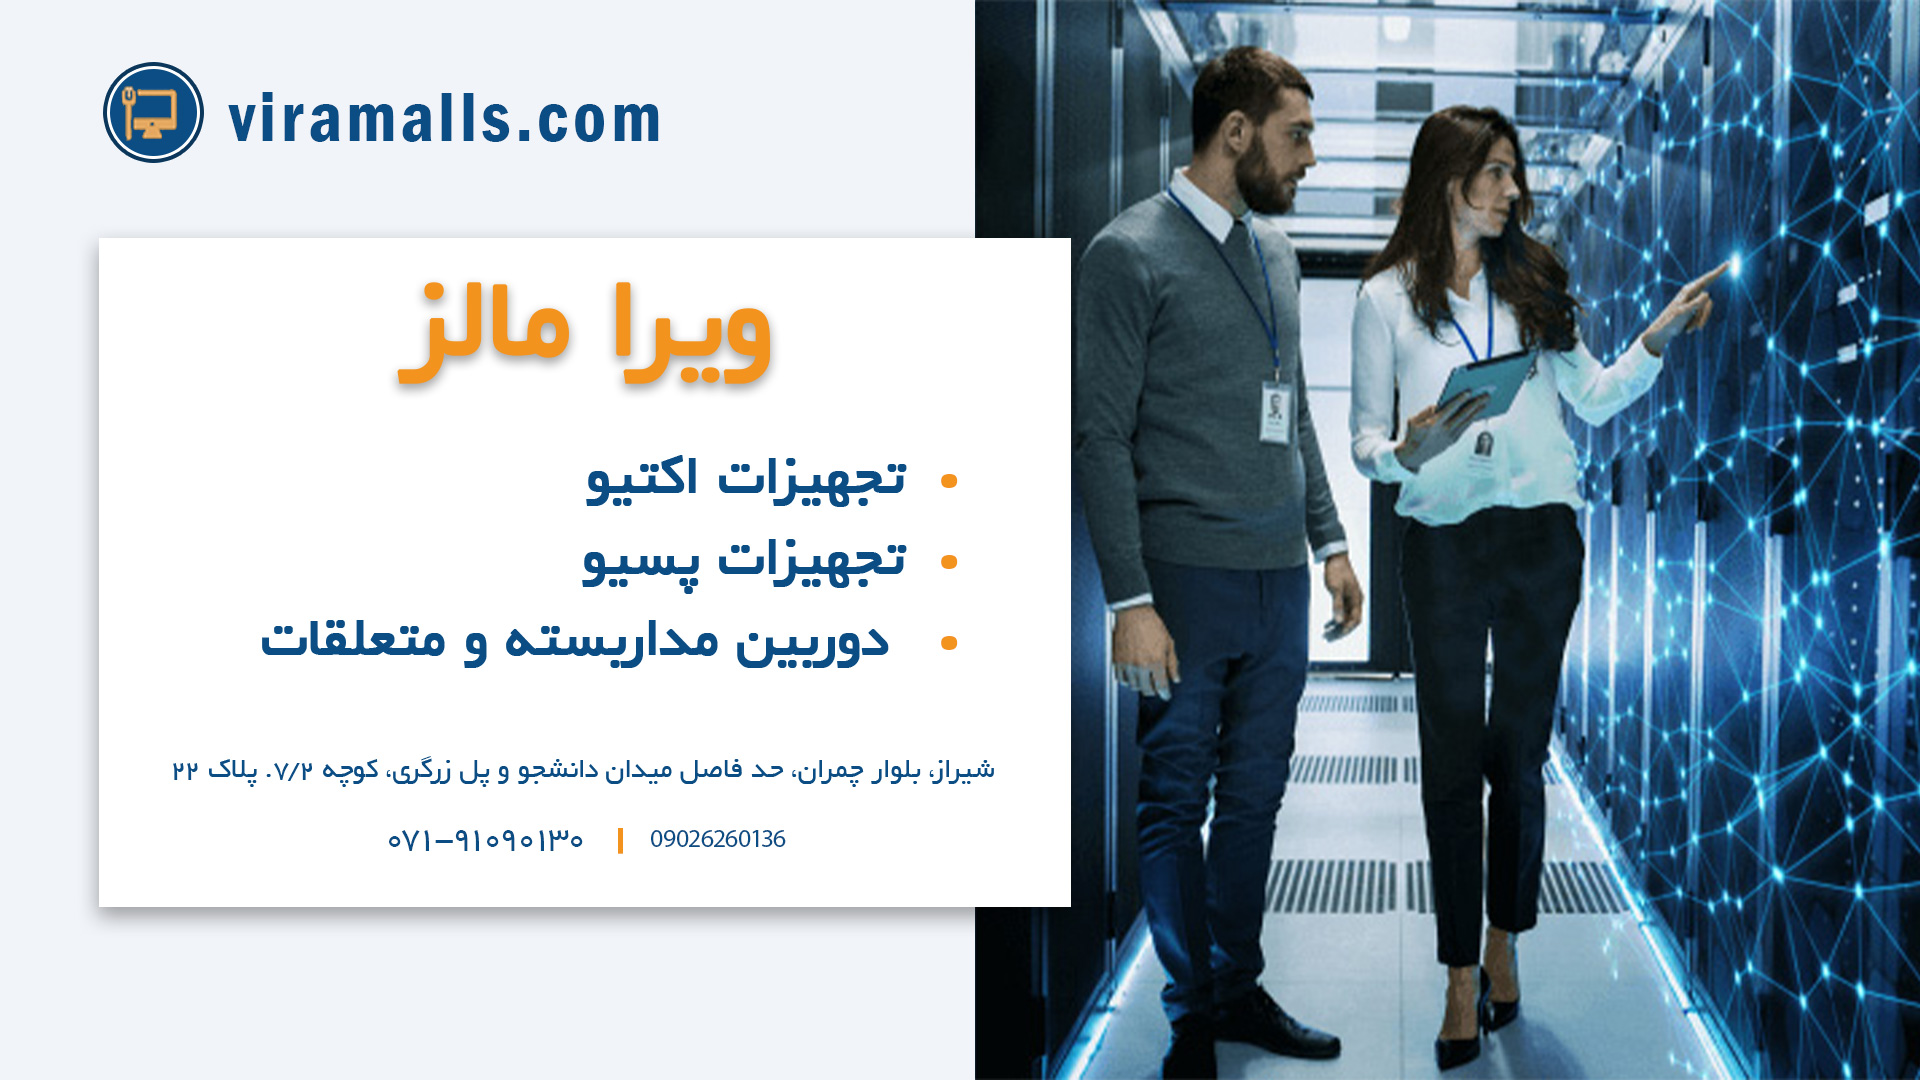 ویرا مالز - فروشگاه اینترنتی تجهیزات شبکه در شیراز | خرید تجهیزات شبکه در شیراز